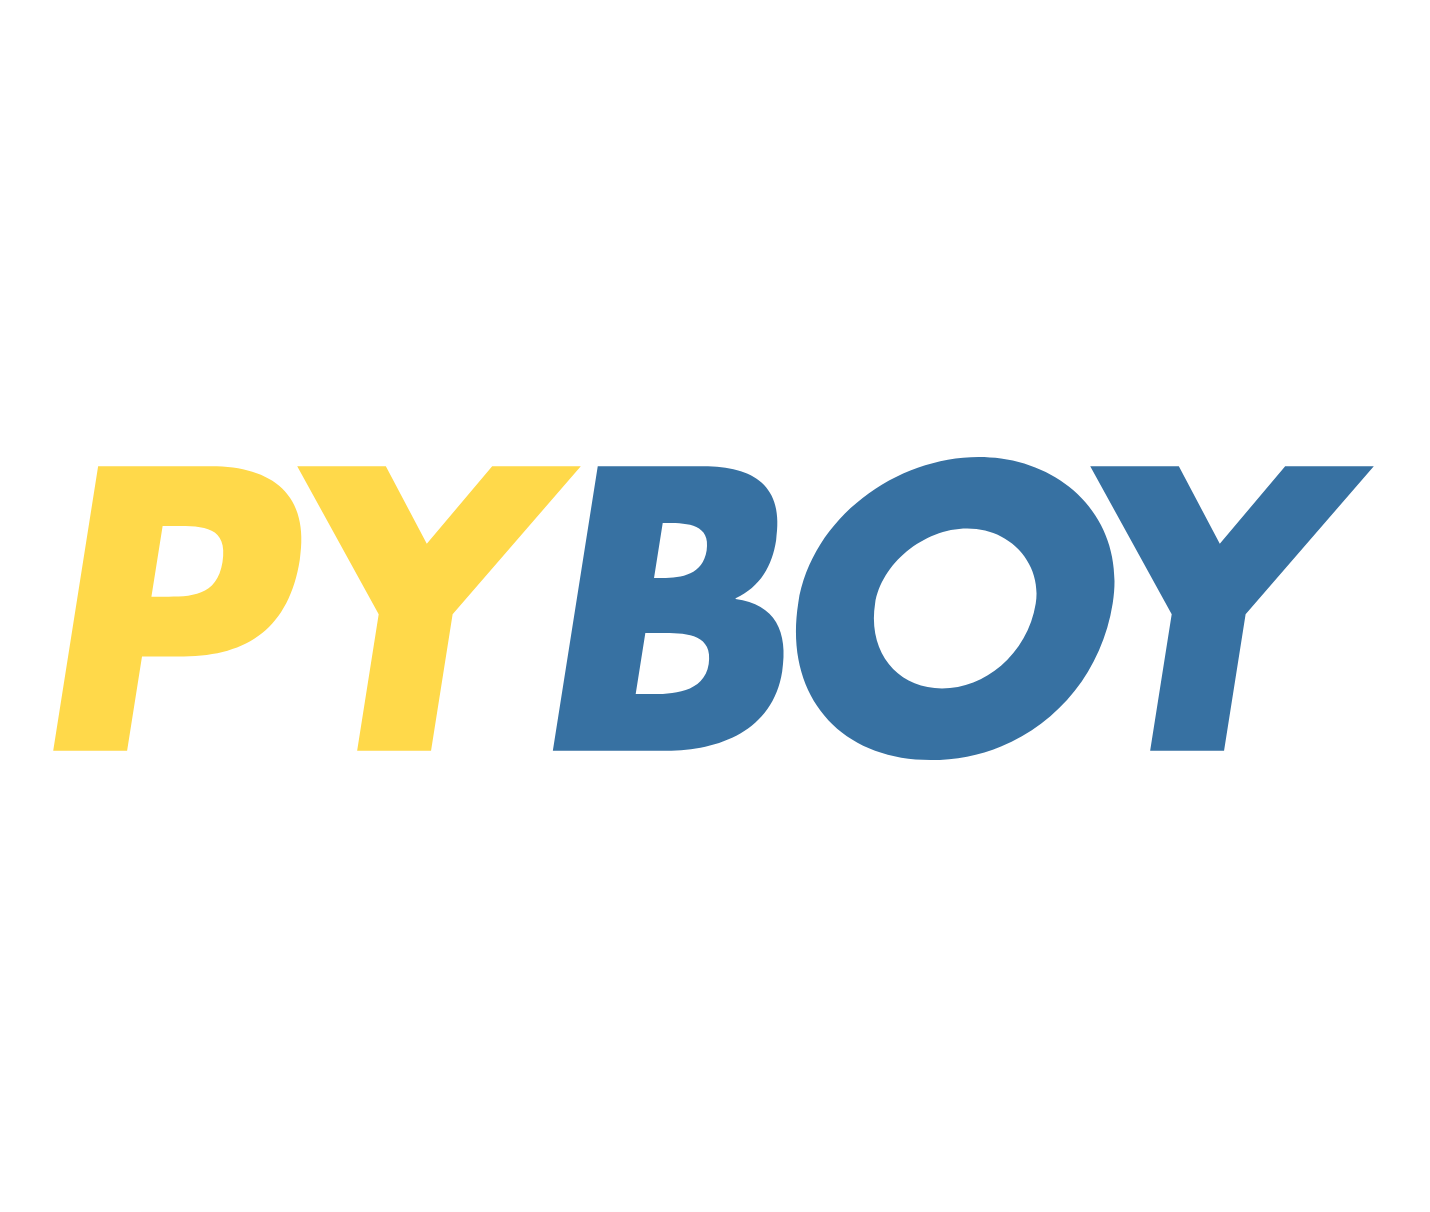 PyBoy